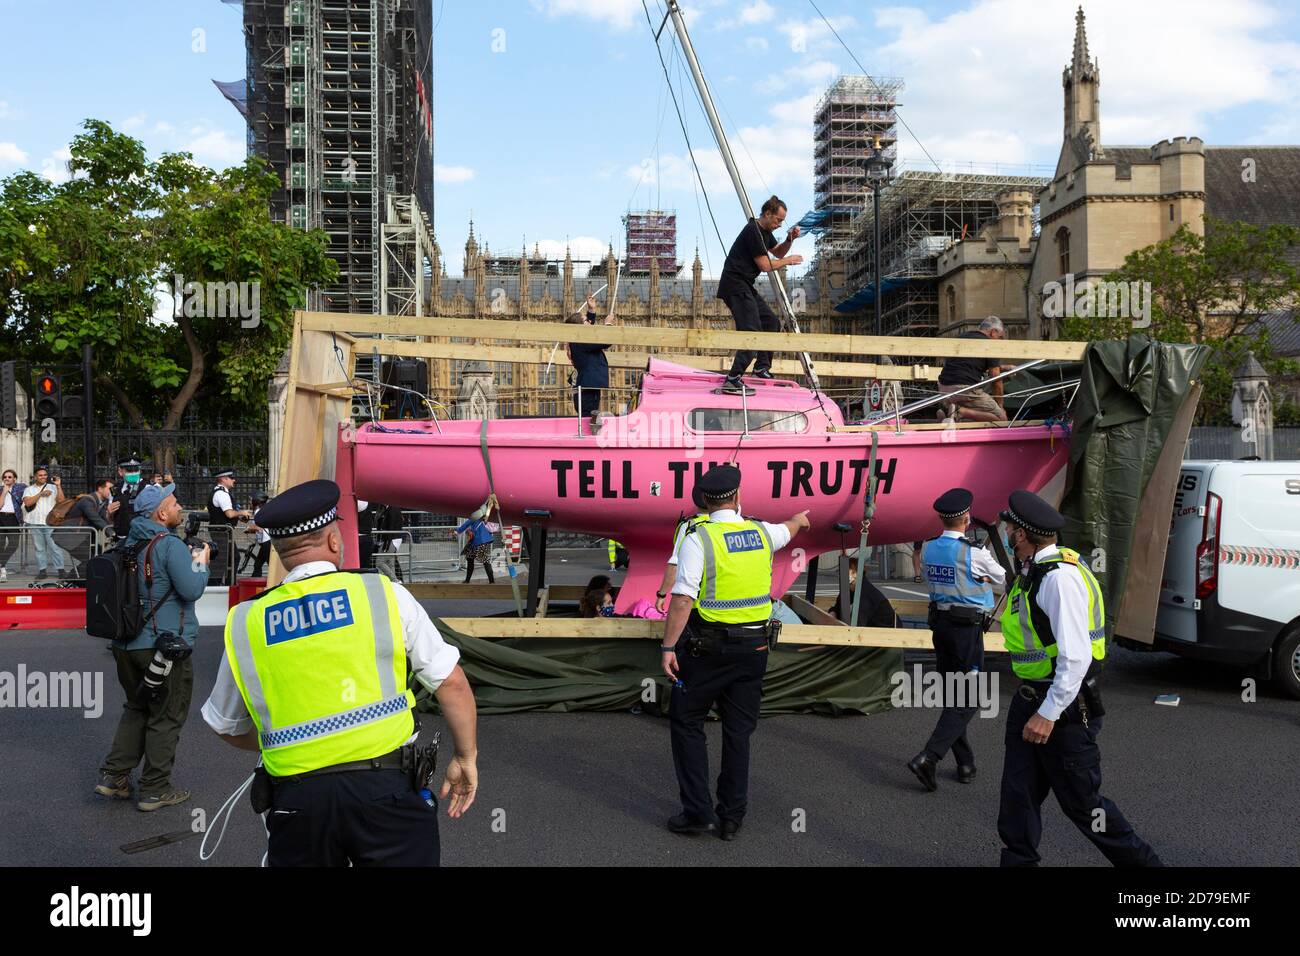 Le navire rose est non déveillé à l'extérieur du Parlement lors d'une manifestation de la rébellion d'extinction, Parliament Square, Londres, 10 septembre 2020 Banque D'Images